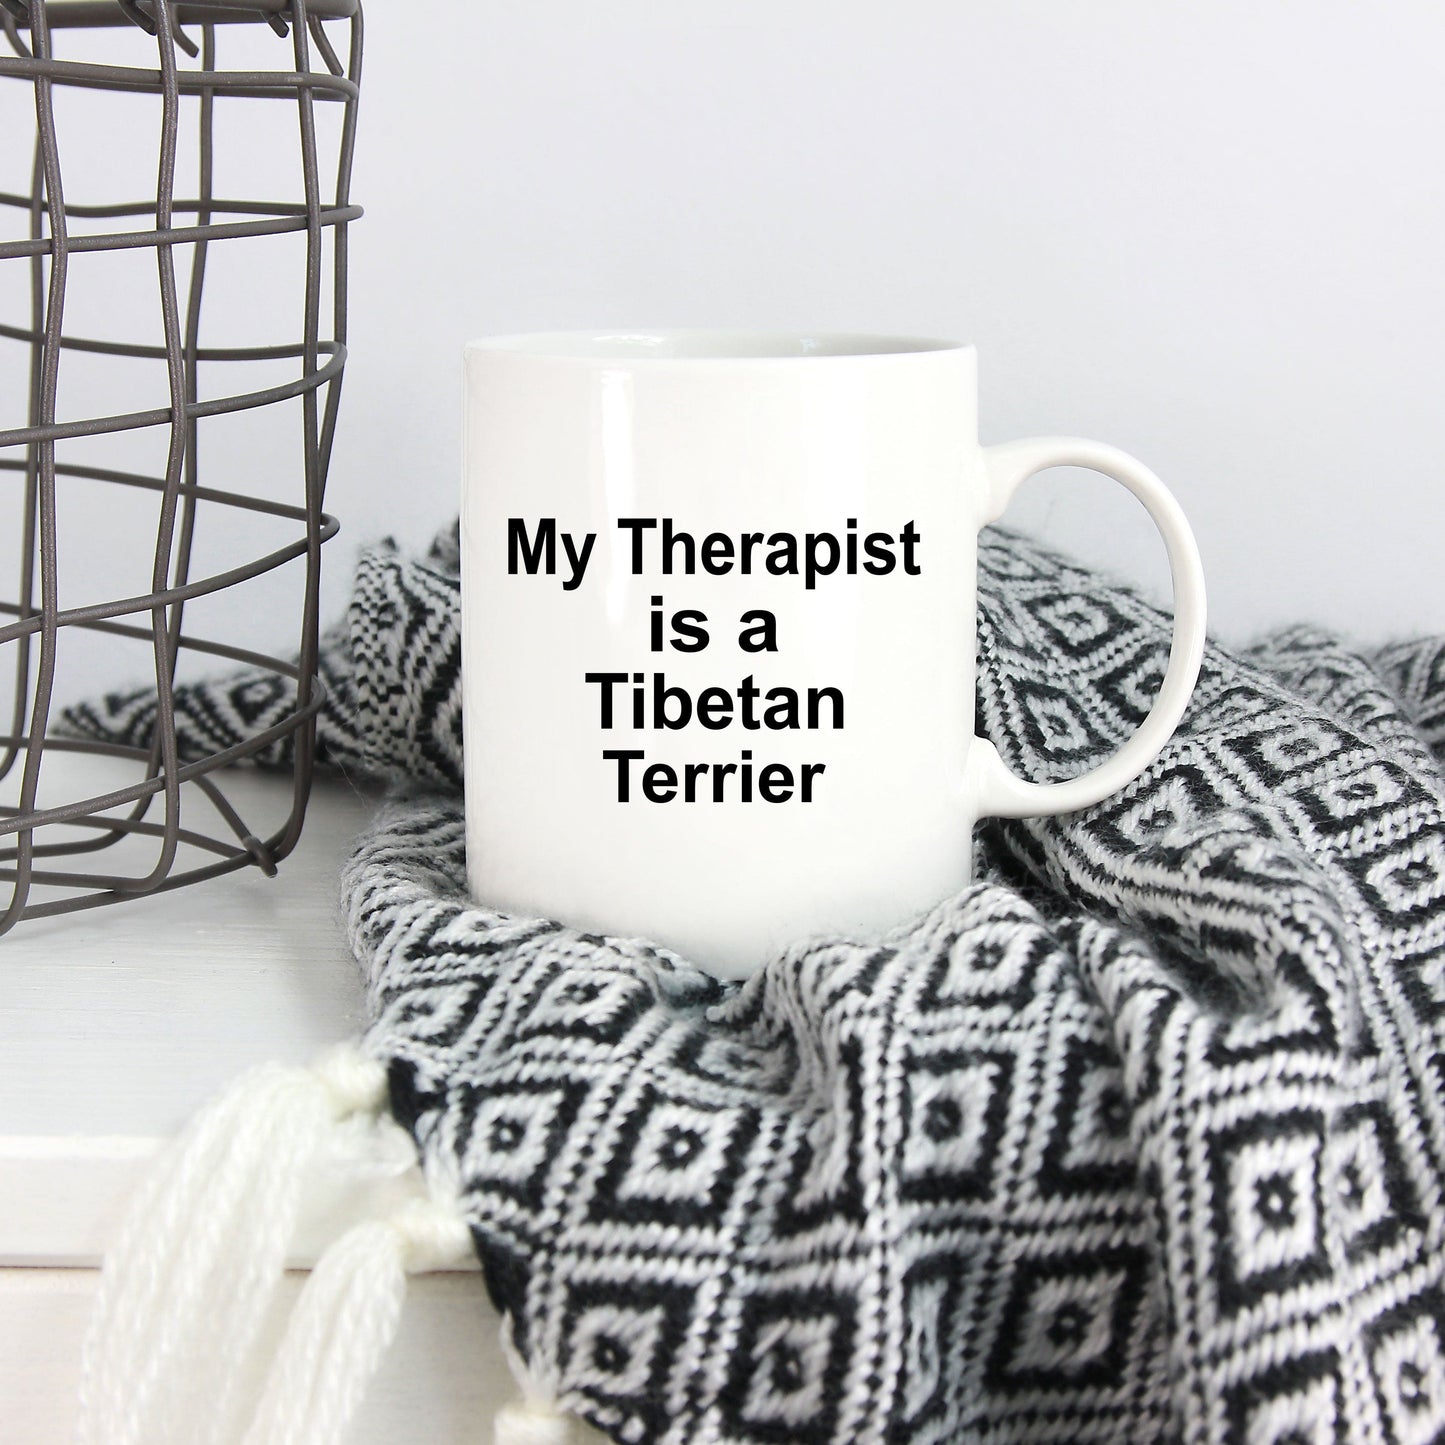 Tibetan Terrier Dog Owner Lover Funny Gift Therapist White Ceramic Coffee Mug